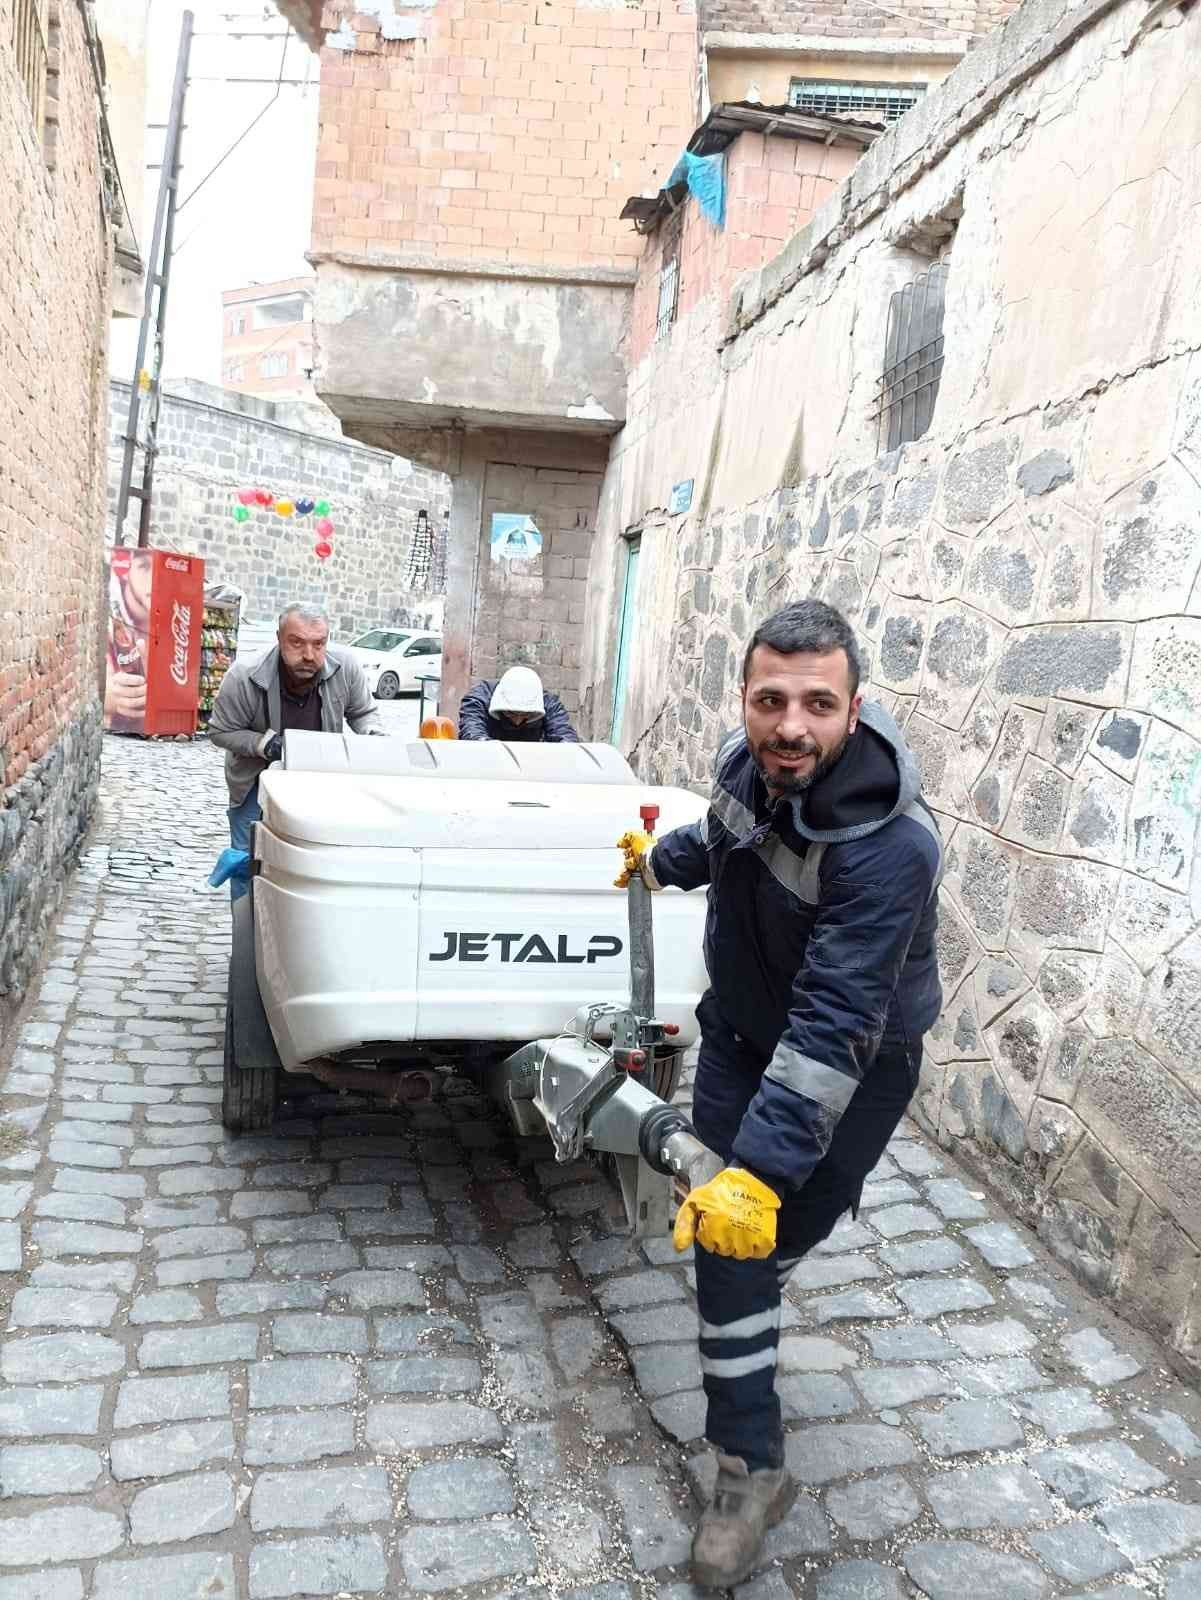 Suriçi’nde oluşan kanalizasyon arızalarına jet vidanjörle müdahale #diyarbakir